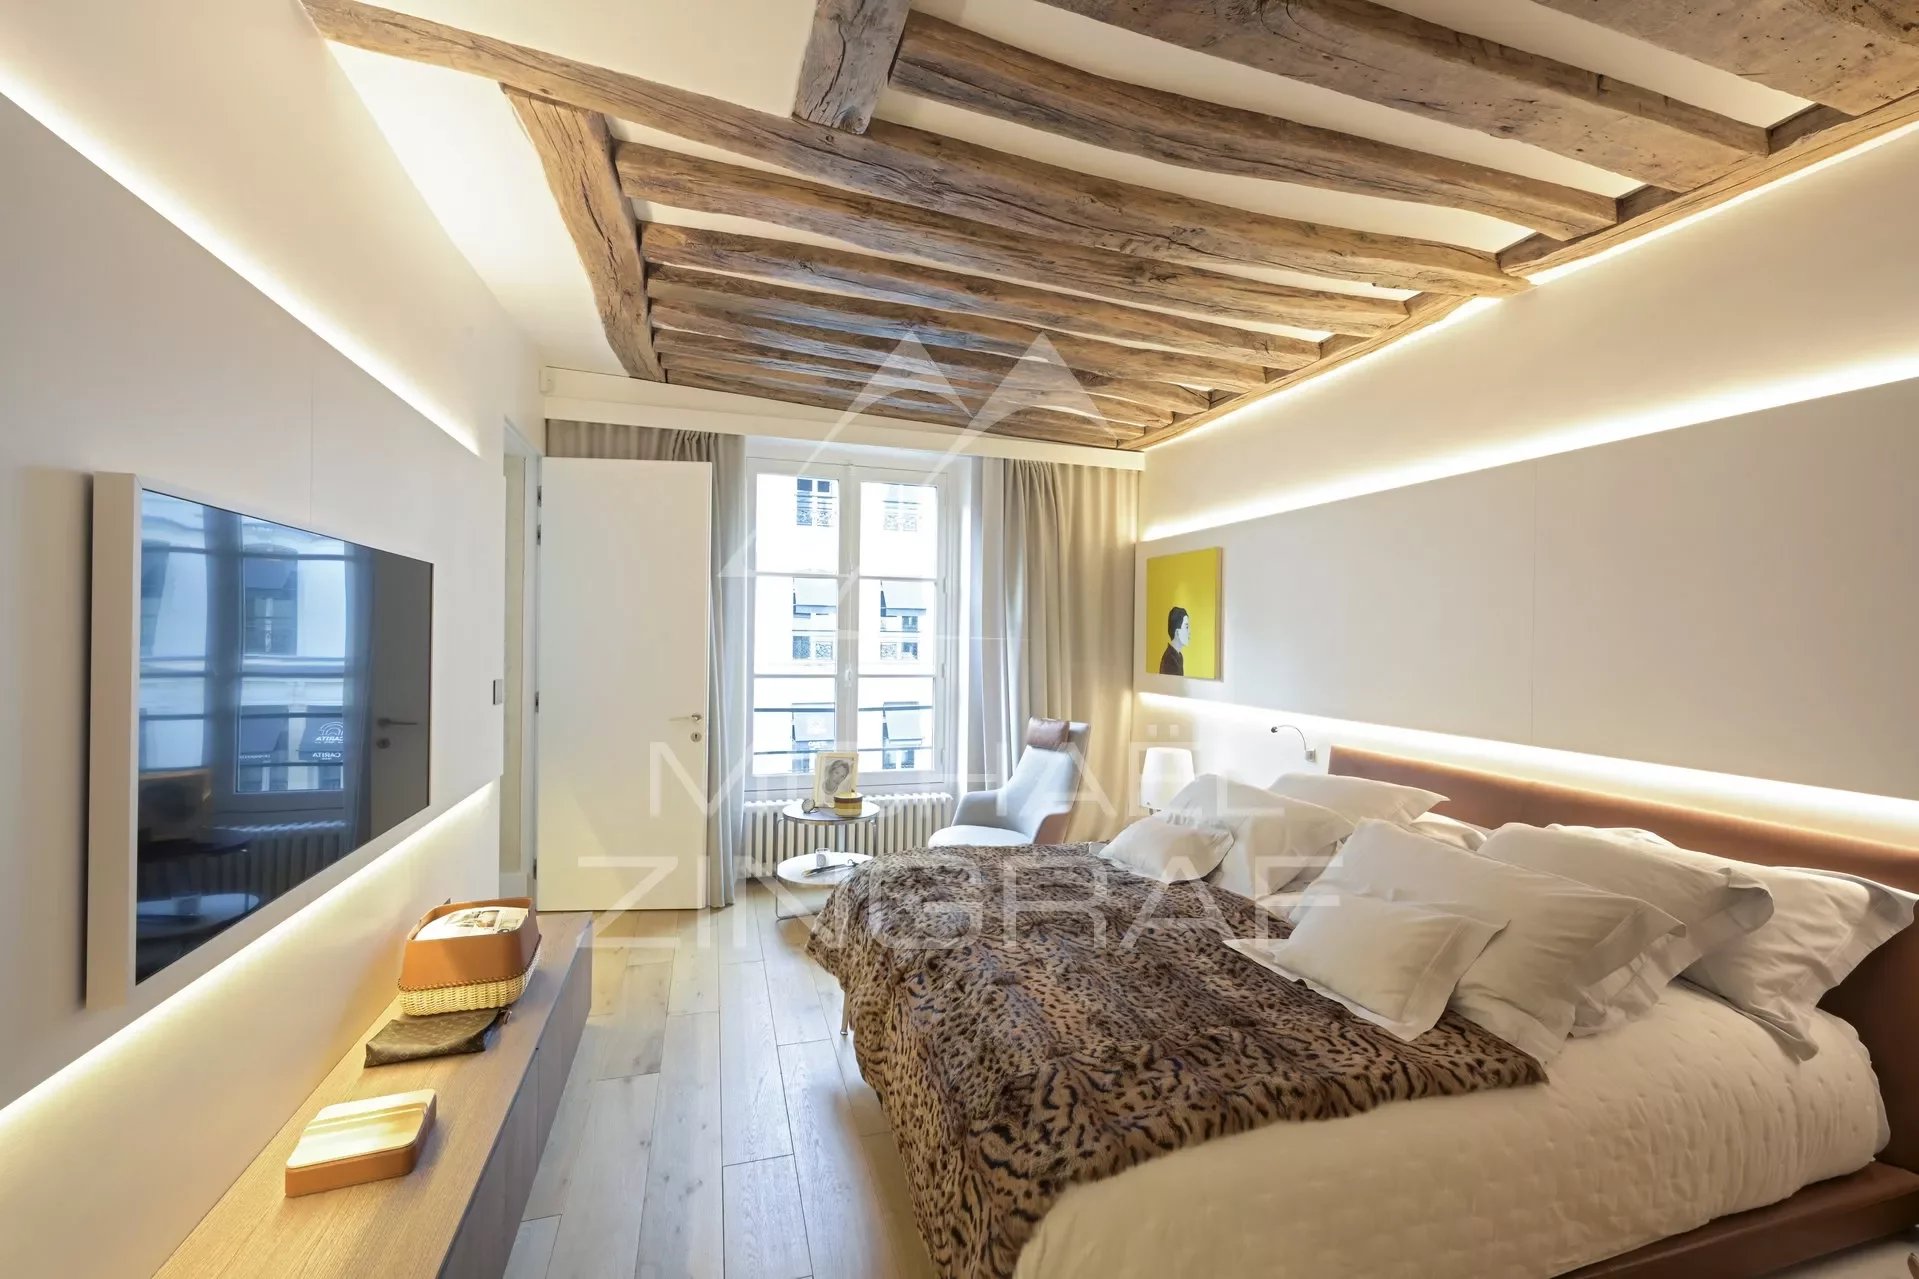 Vente appartement Paris 8ème - 2 chambres - Rue du faubourg Saint Honoré